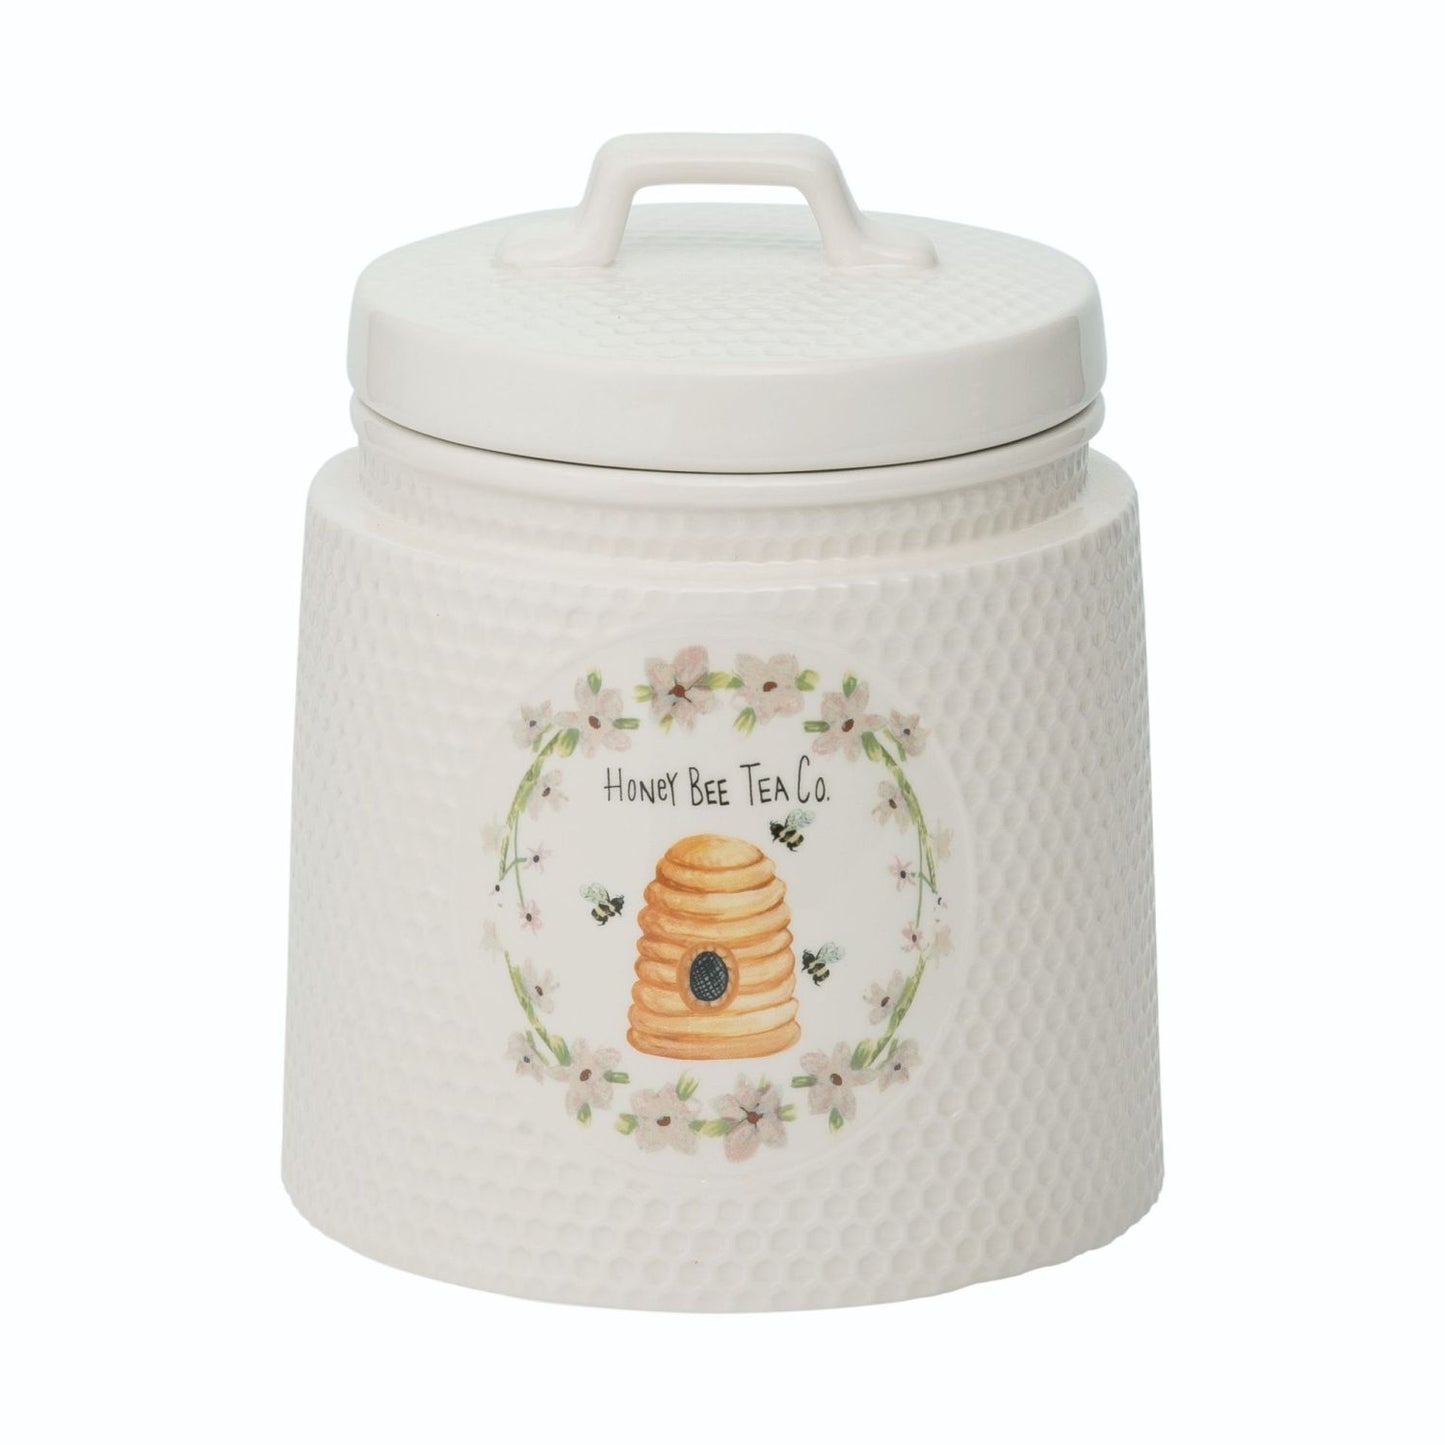 Transpac Dolomite Honey Bee Tea Co. Cookie Jar